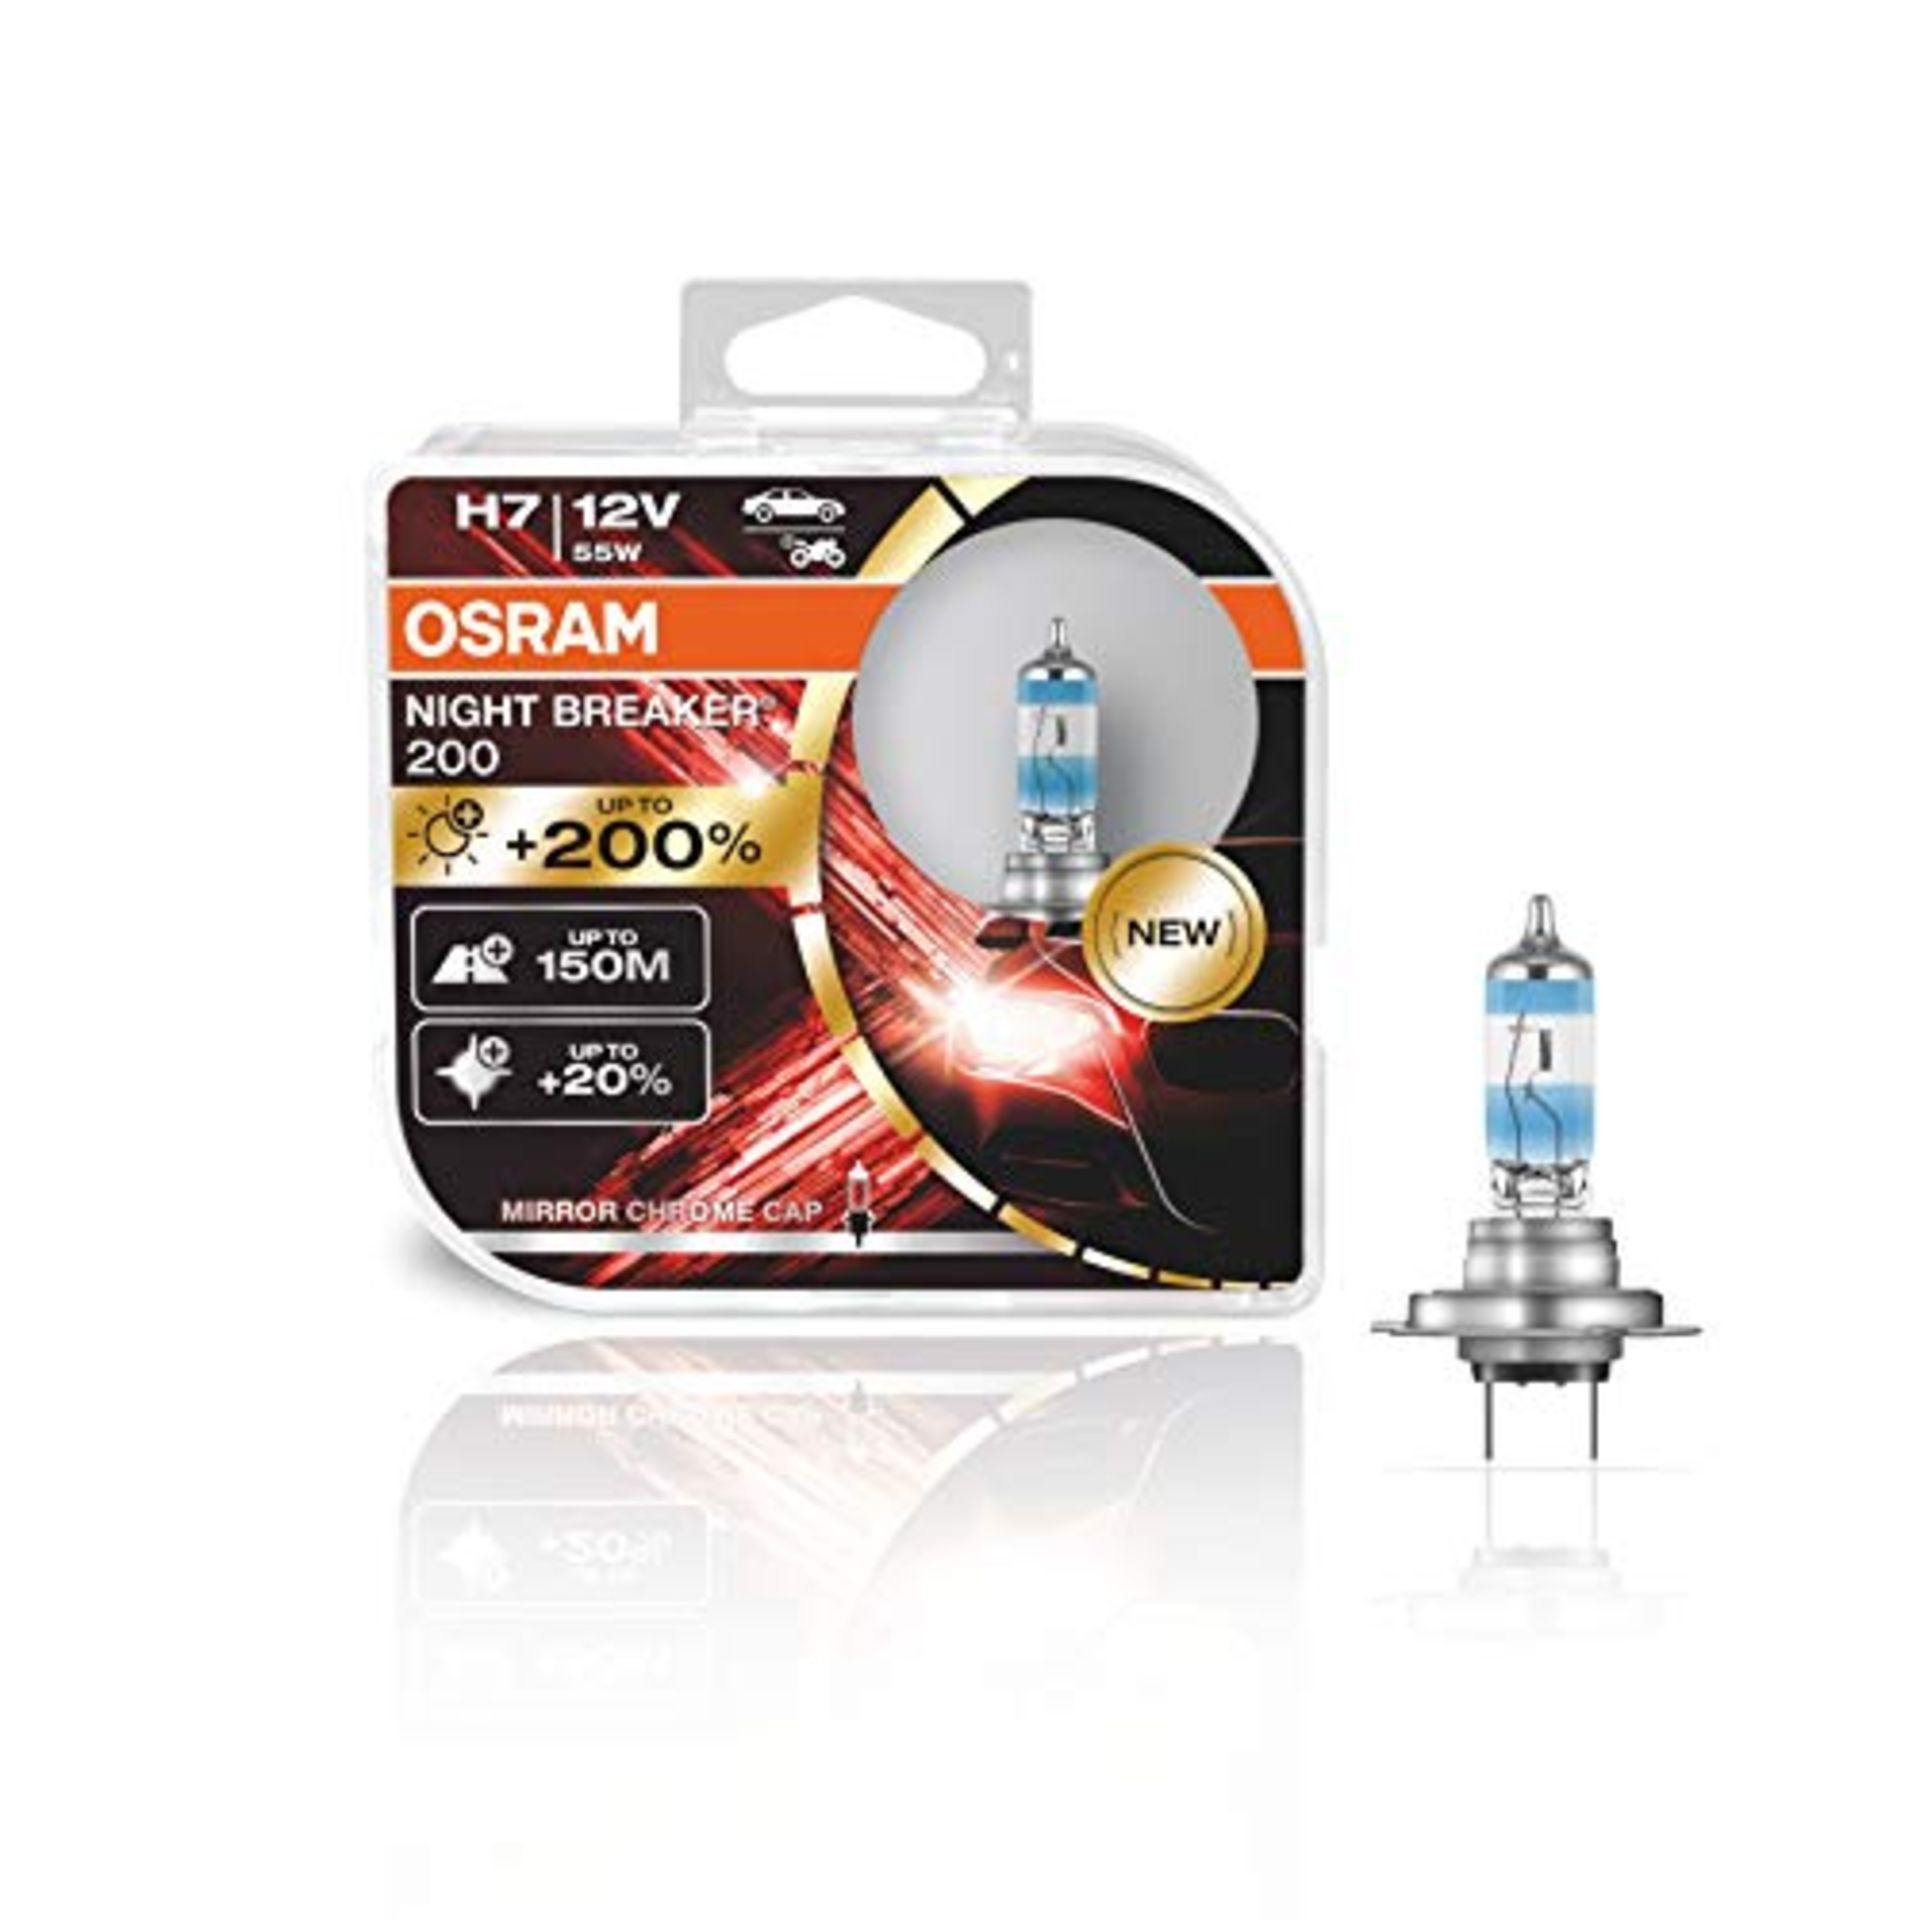 OSRAM NIGHT BREAKER 200, H7, +200% more brightness, halogen headlight lamp, 64210NB200